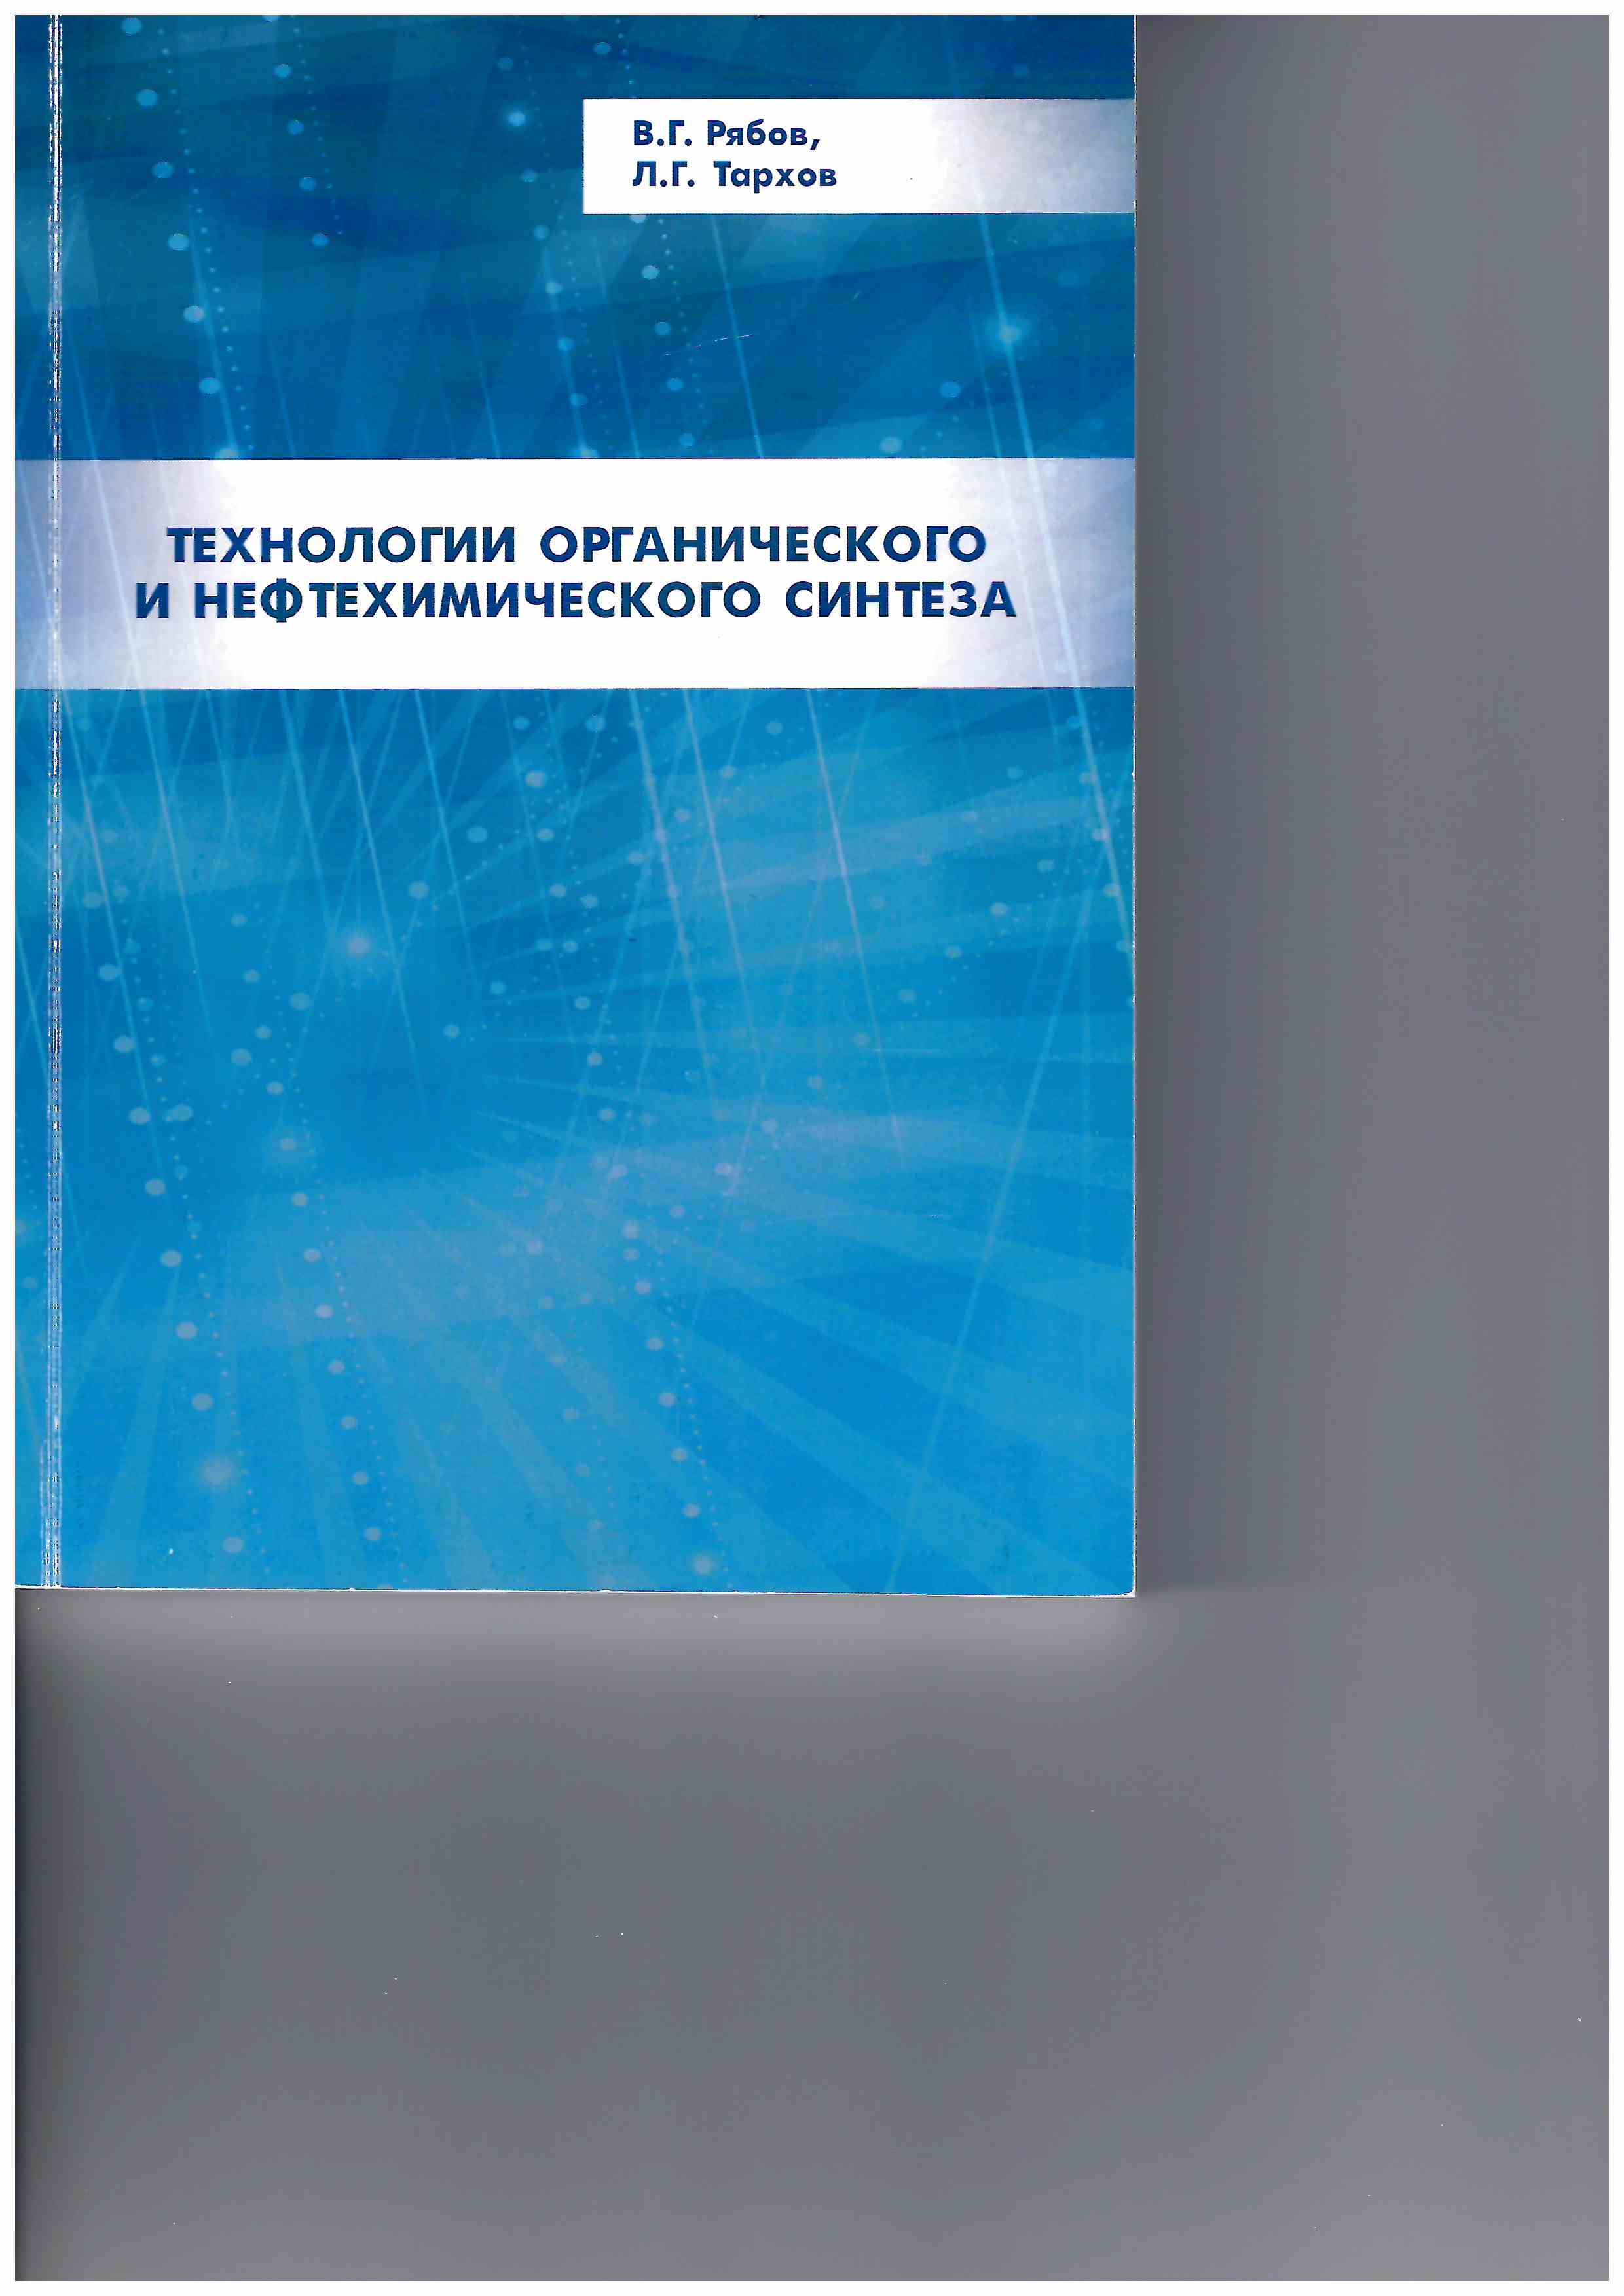 Технологии органического и нефтехимического синтеза. 2-е изд. испр. и доп.